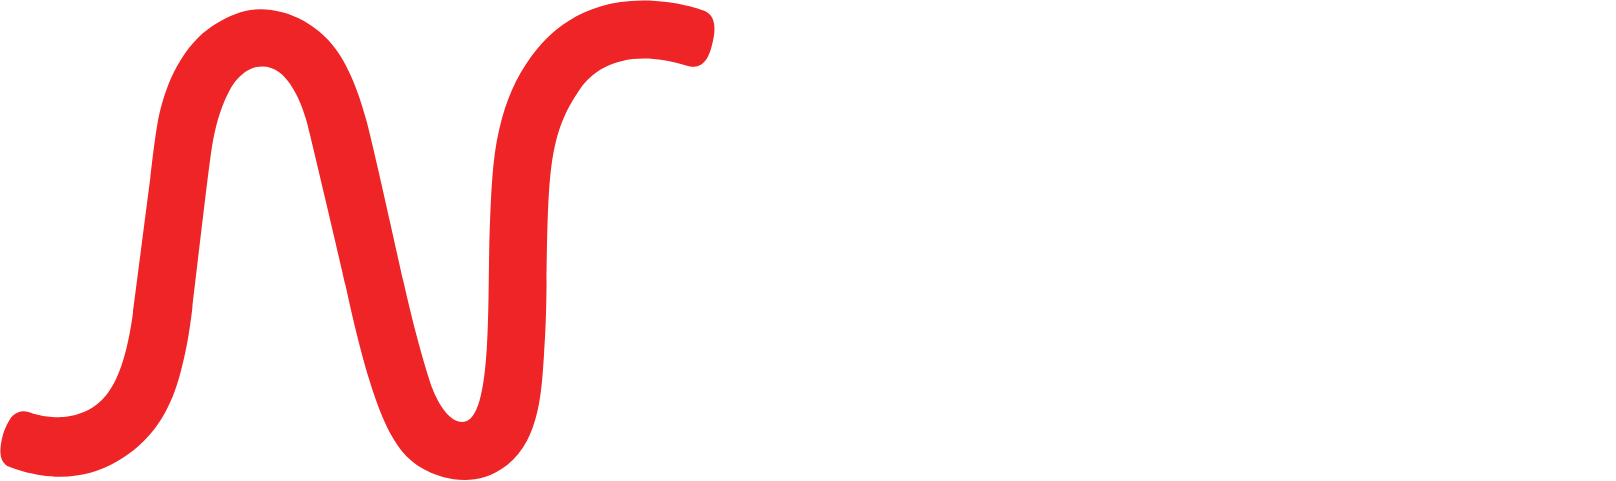 Nexans logo large for dark backgrounds (transparent PNG)